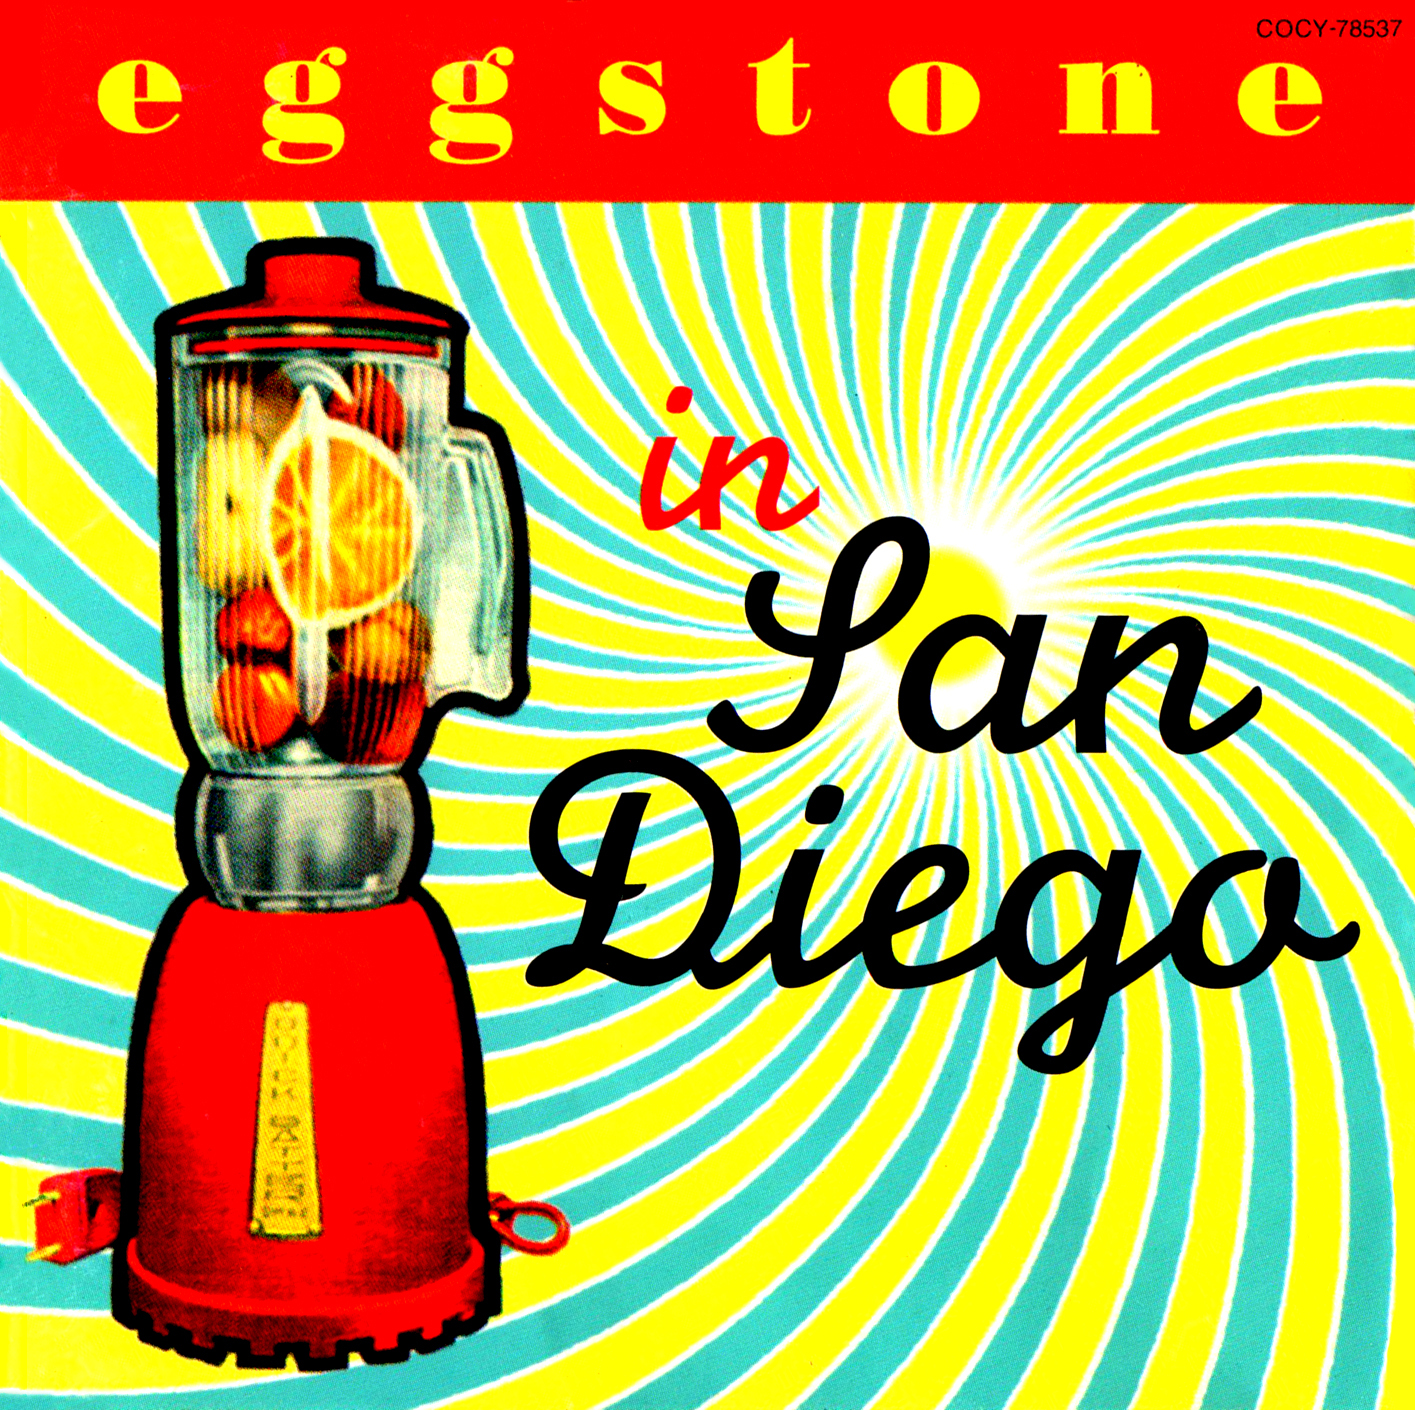 Eggstone (エッグストーン) 1stアルバム『In San Diego (イン・サン・ディエゴ)』(1992年) 高画質CDジャケット画像